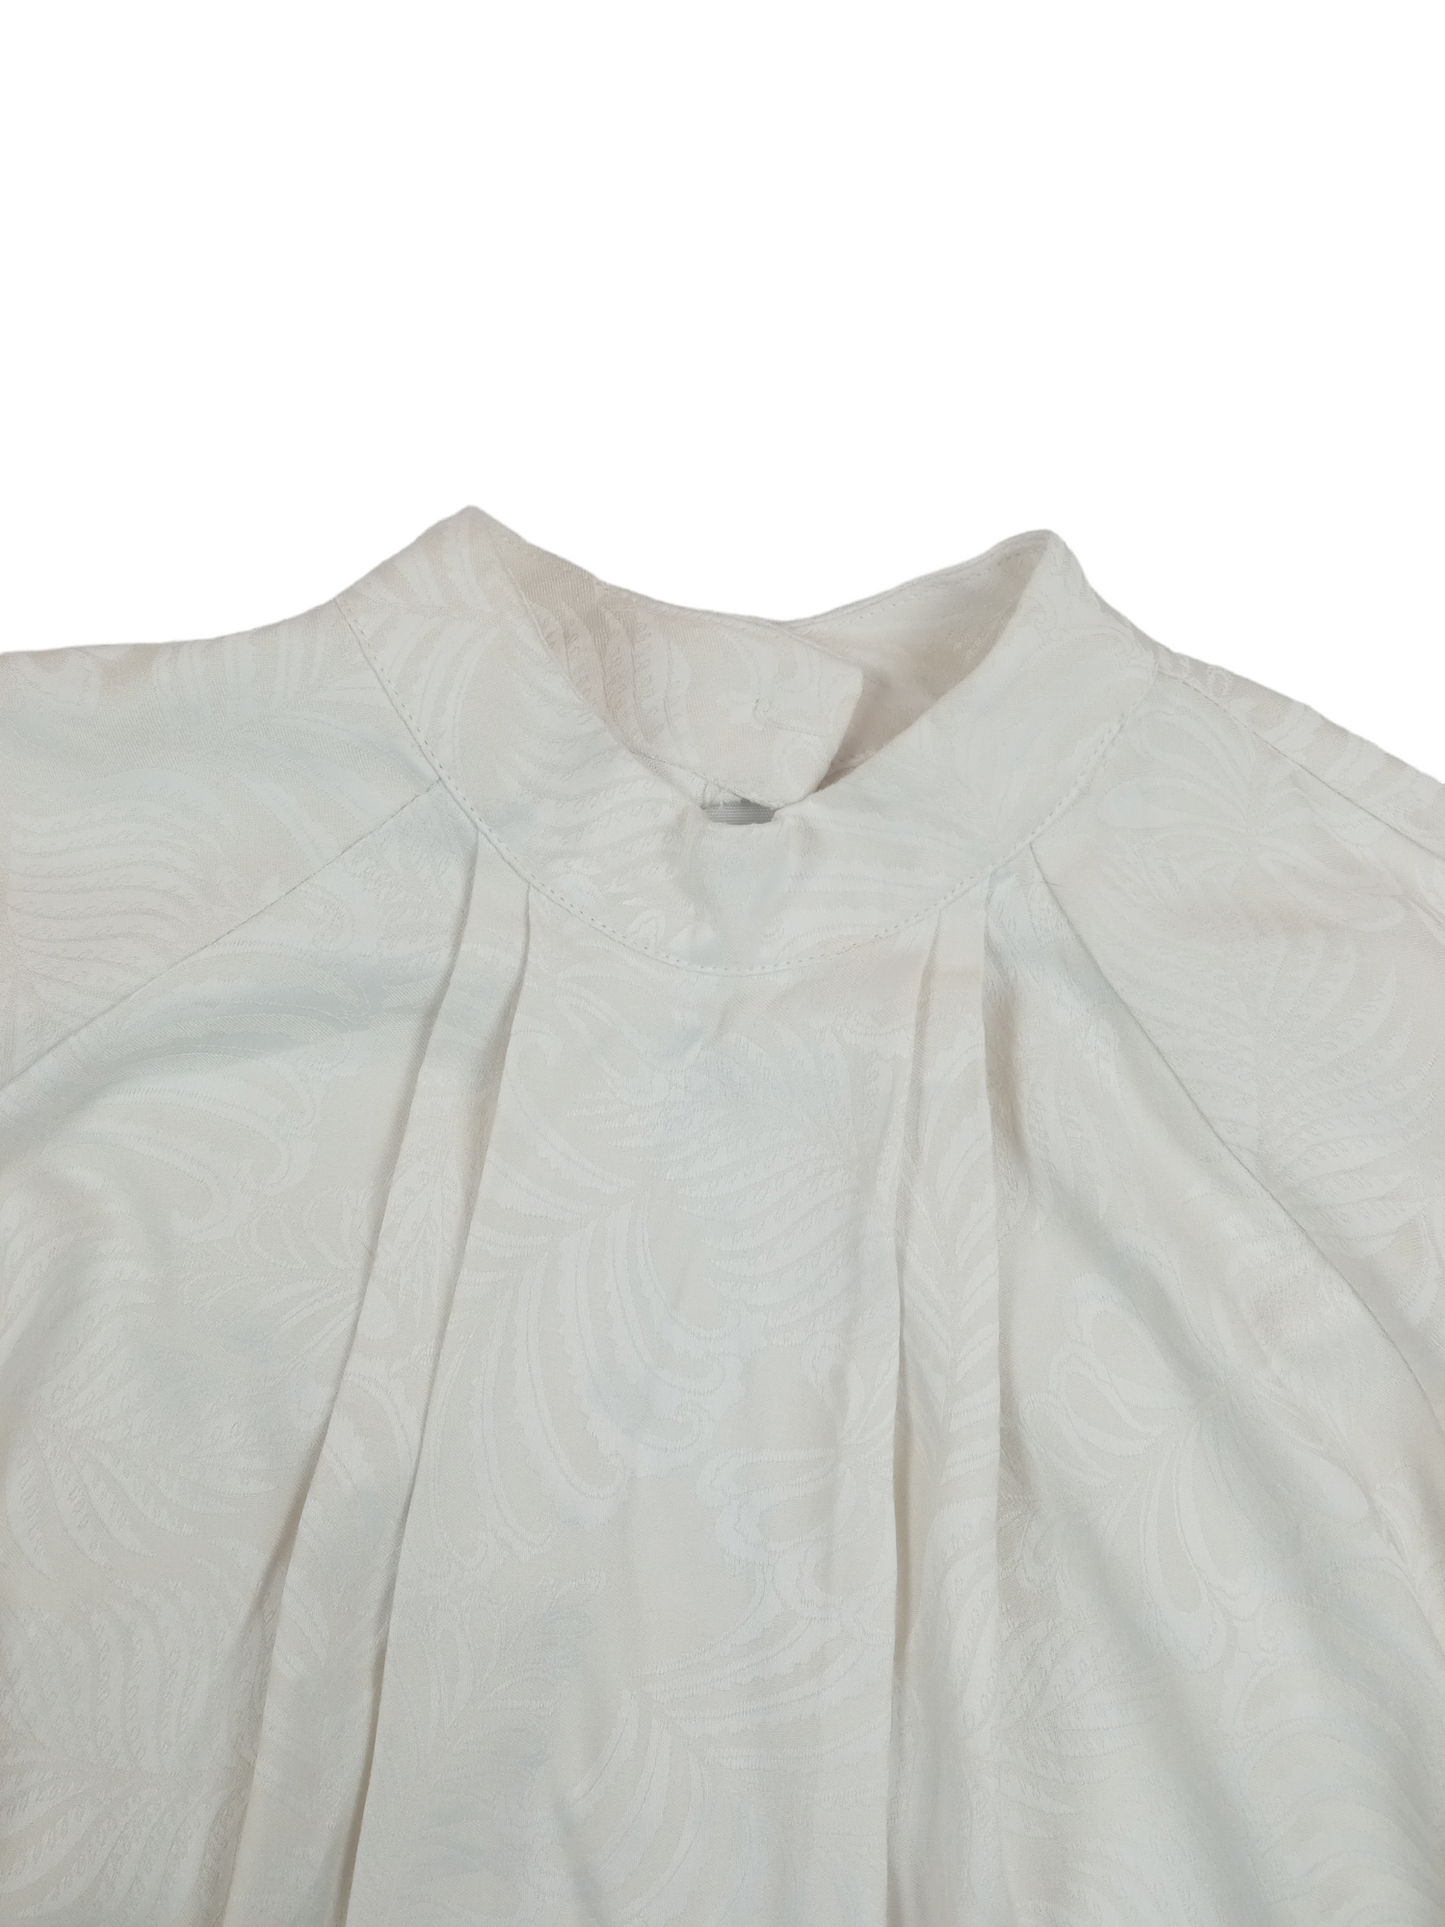 Blusa blanca invierno / Talla 32